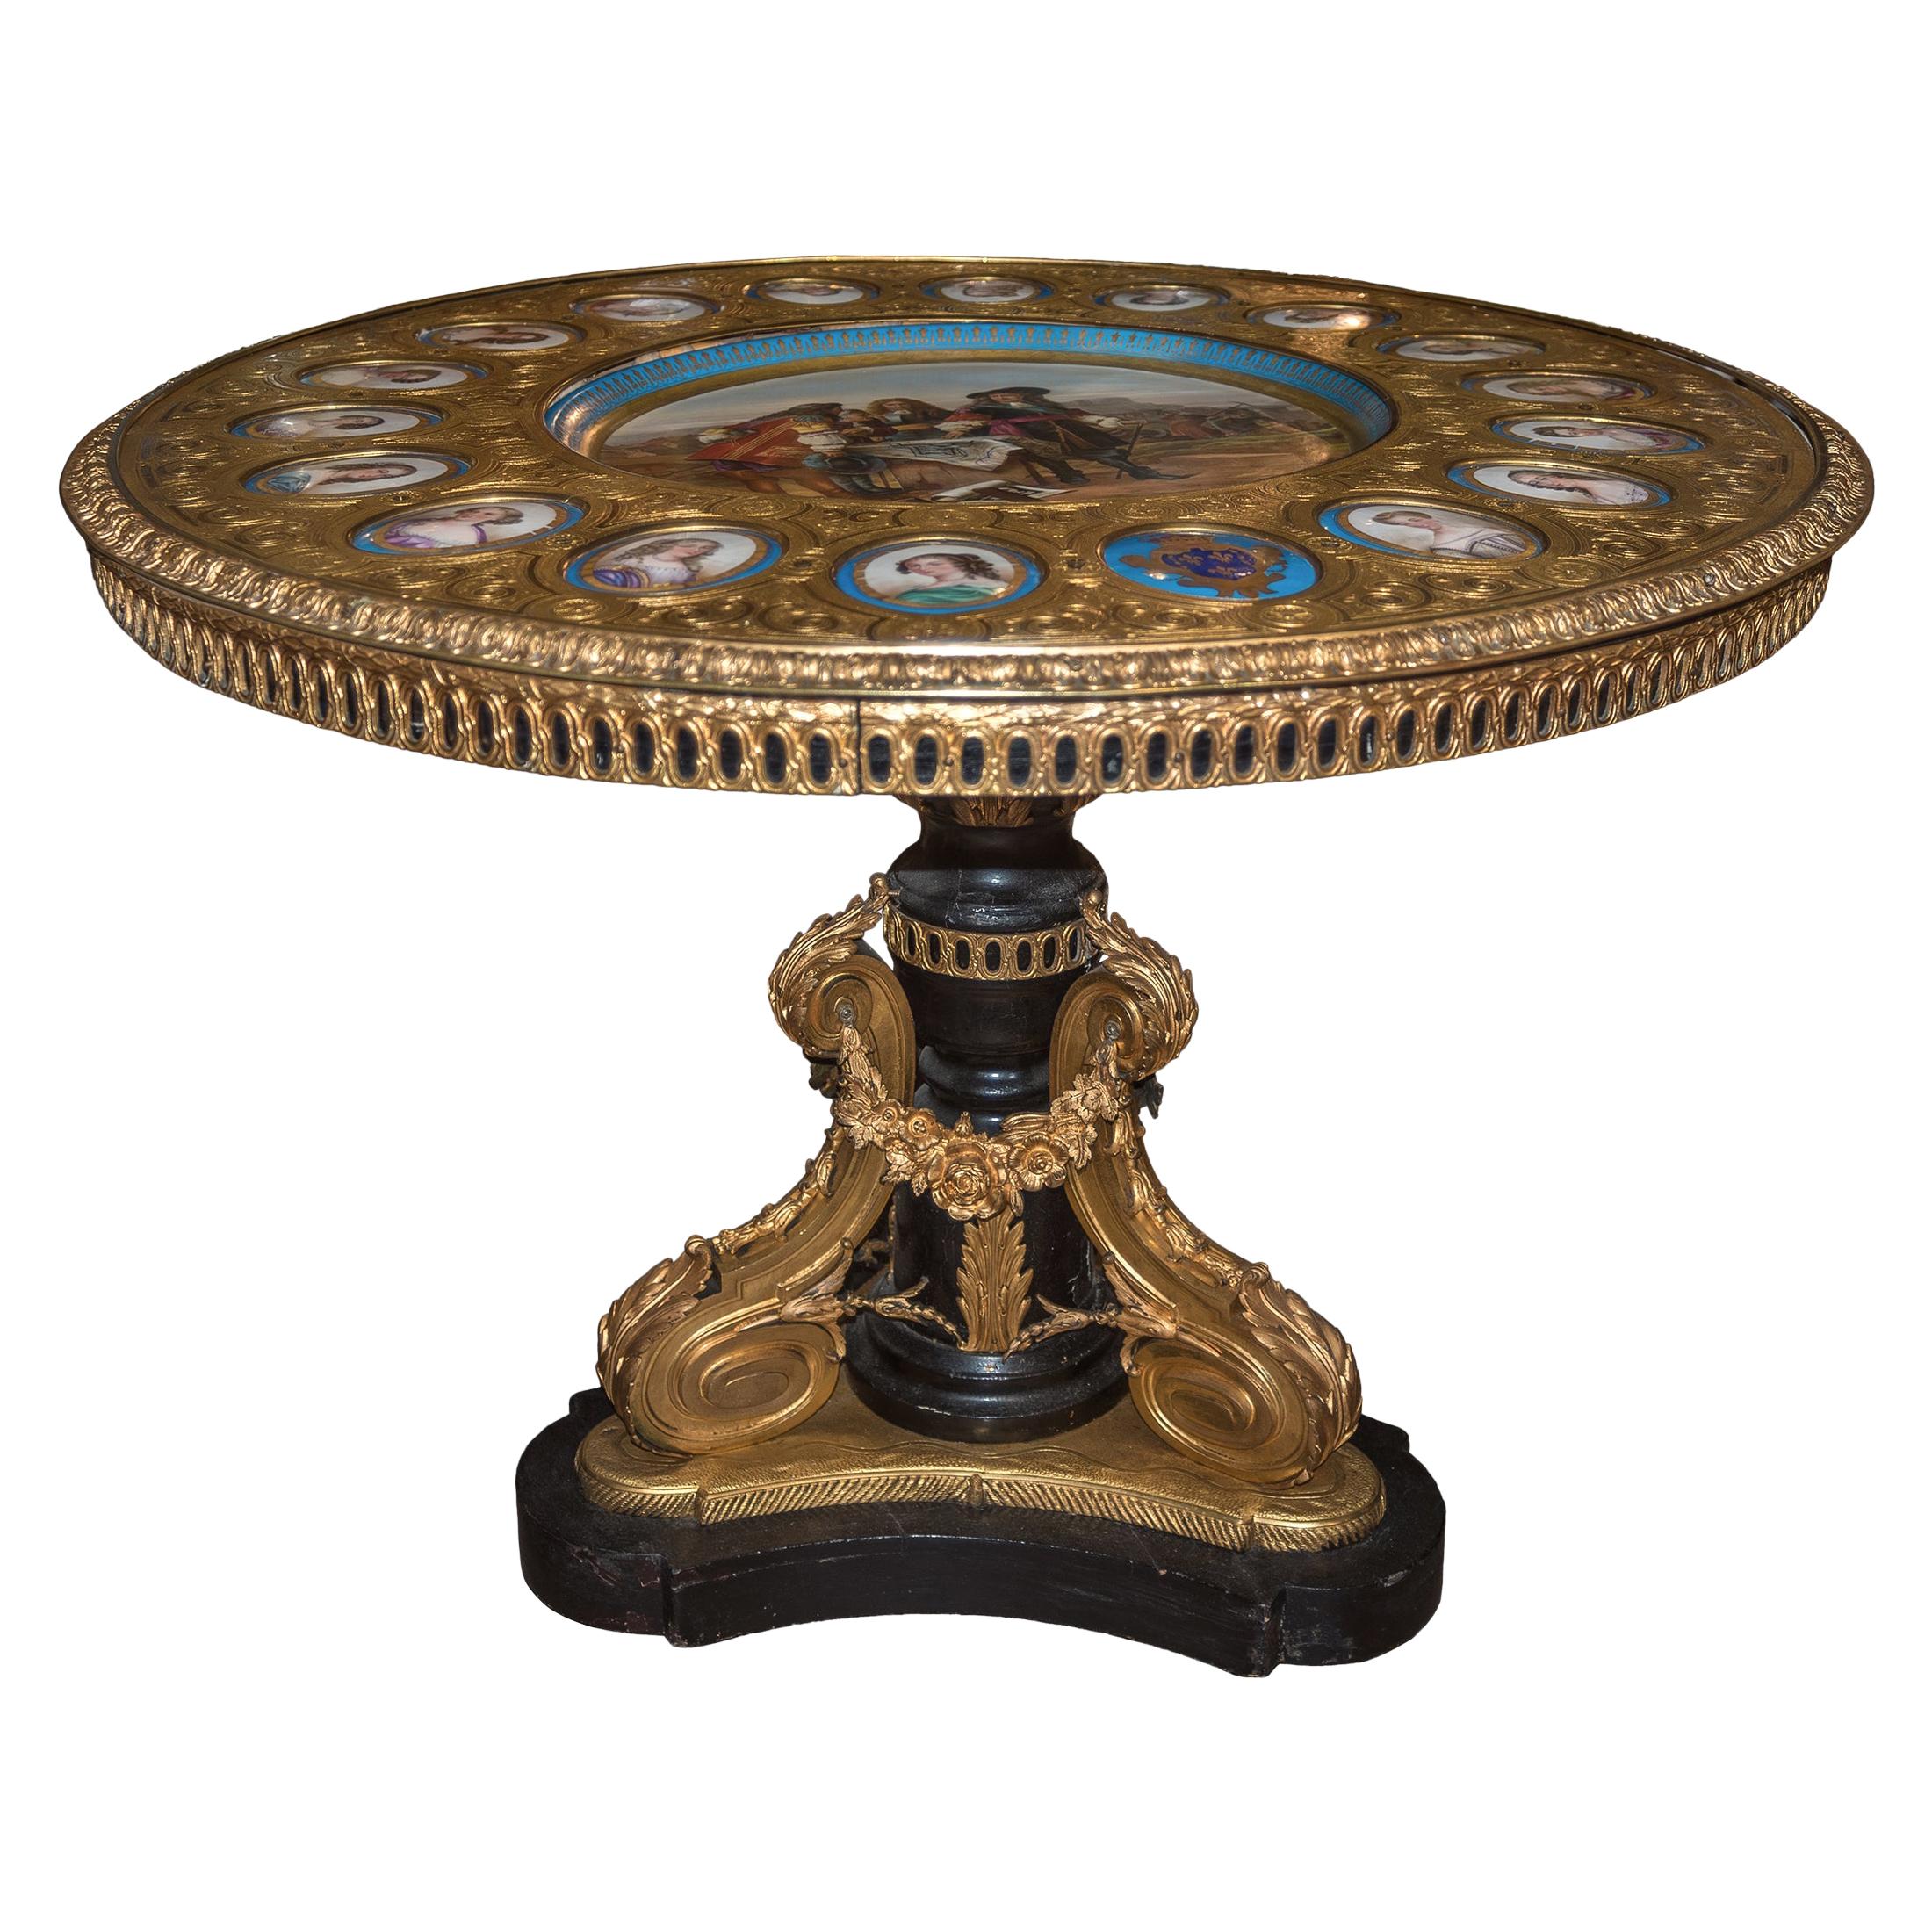 Guéridon français en bois peint et porcelaine de Sèvres, monté sur bronze.